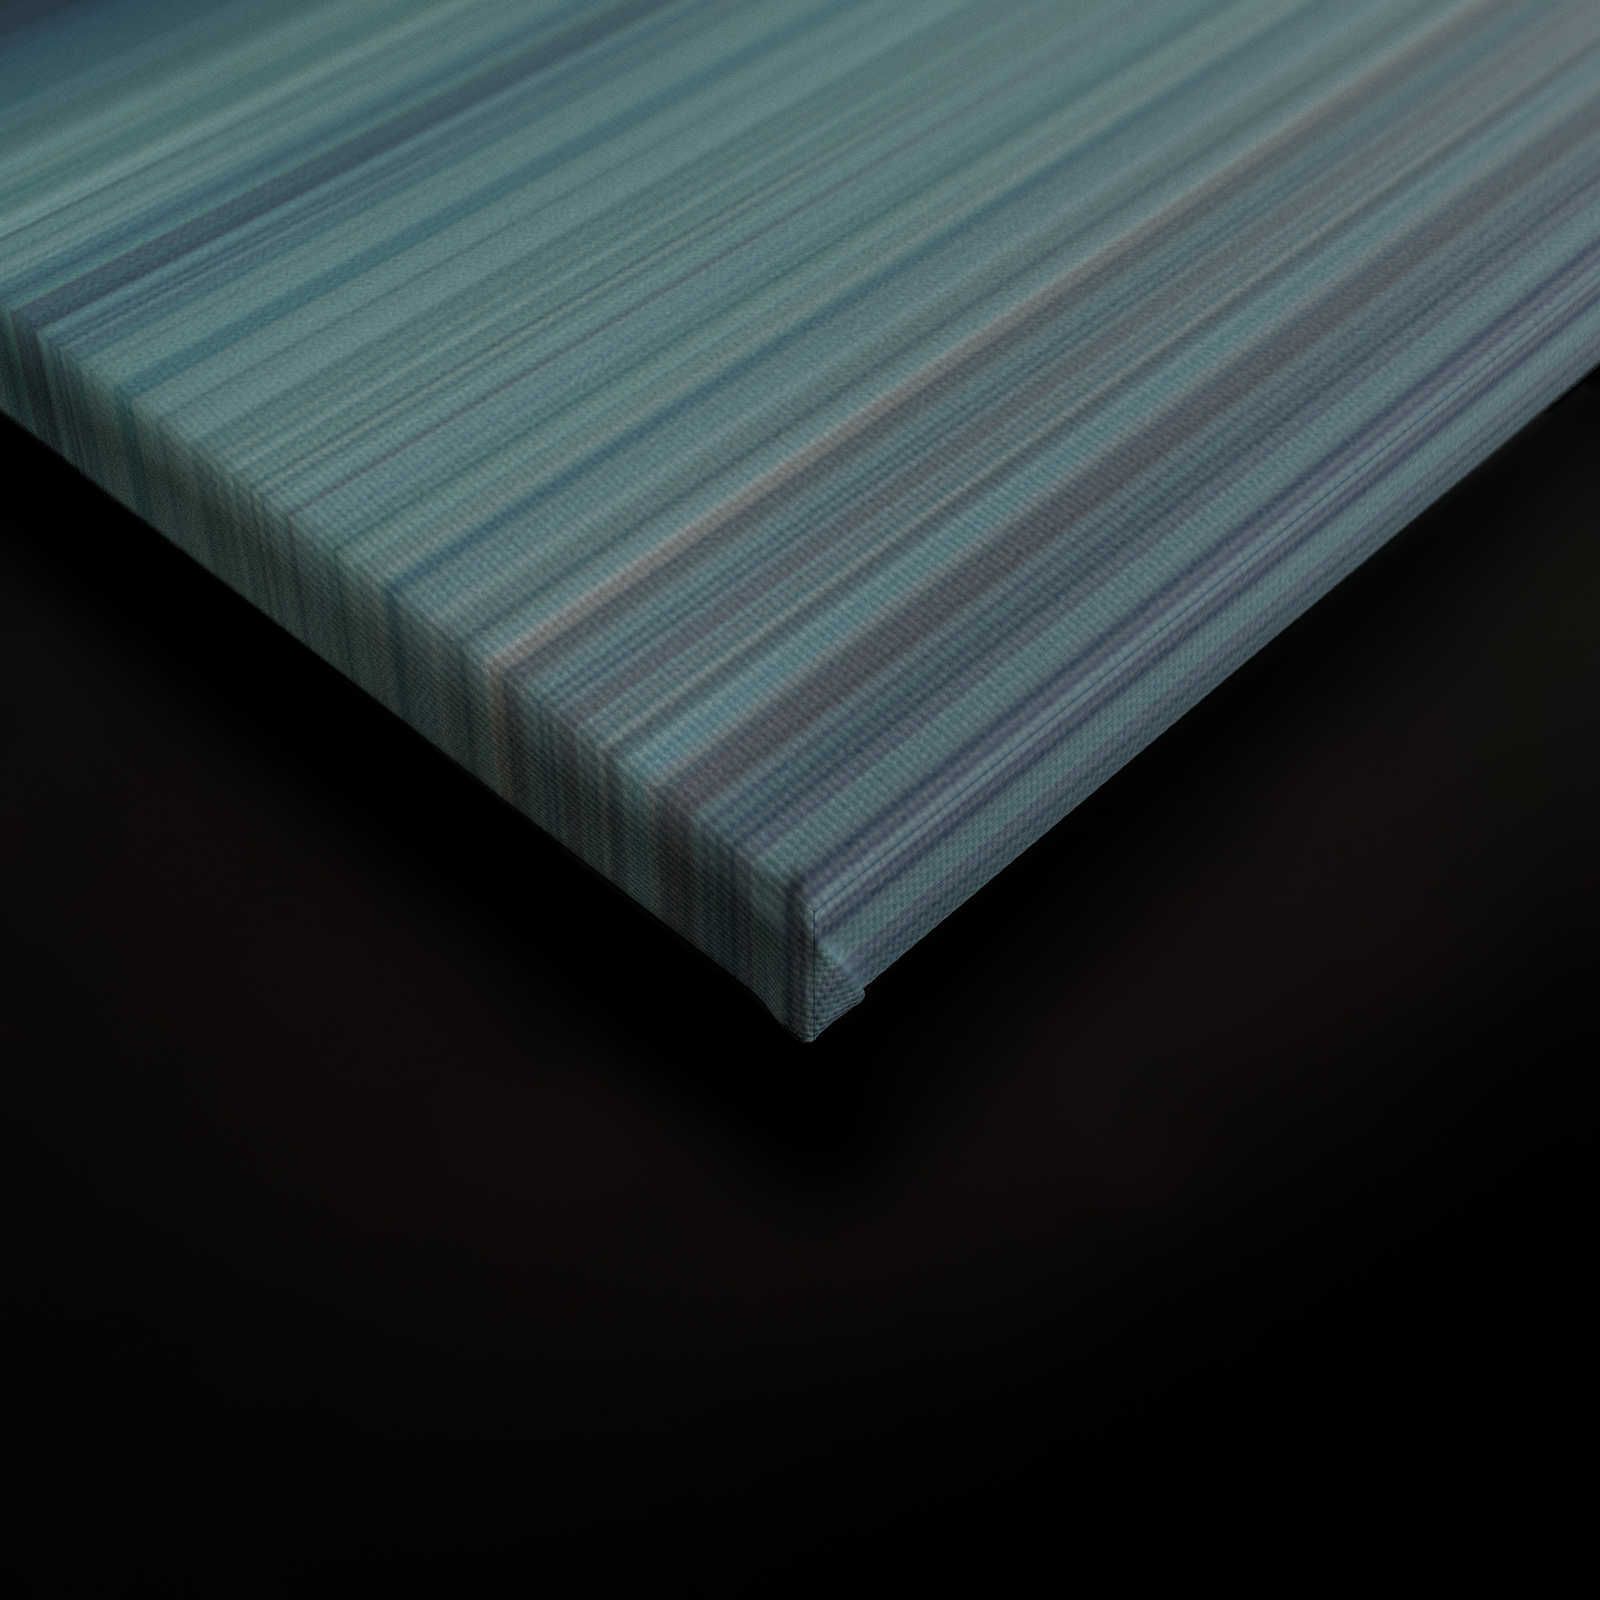             Horizon 1 - Quadro su tela con paesaggio astratto di colore blu - 0,90 m x 0,60 m
        